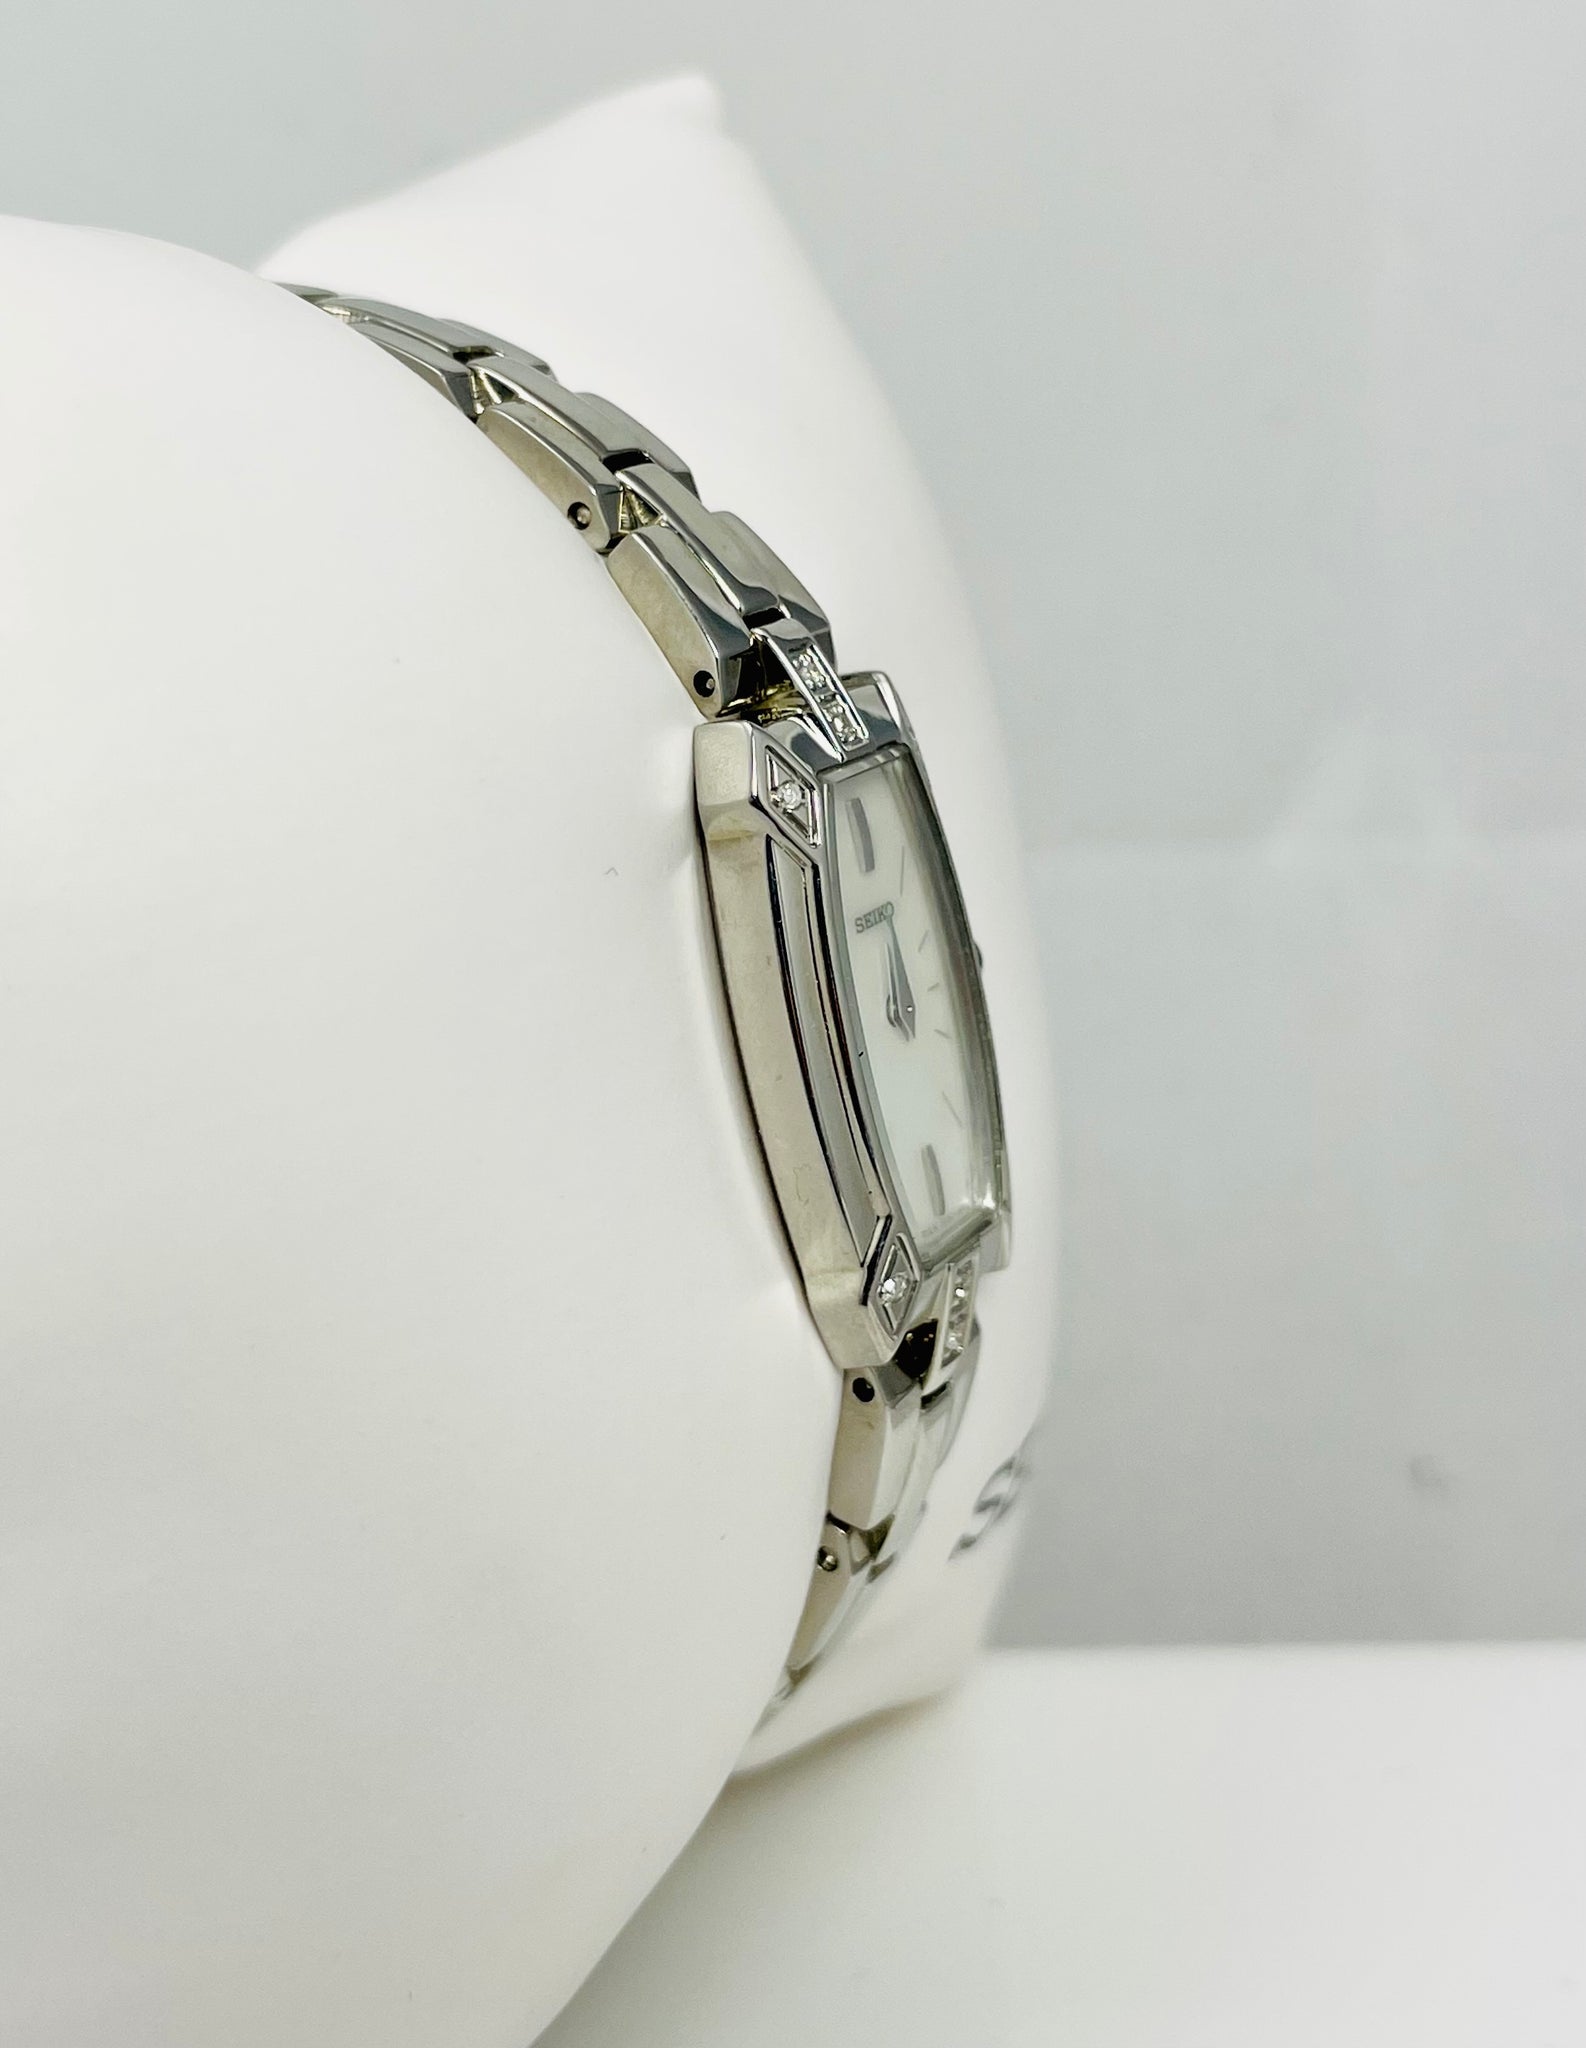 New! $350 Ladies Seiko SZZC59 Stainless Diamond Quartz Watch